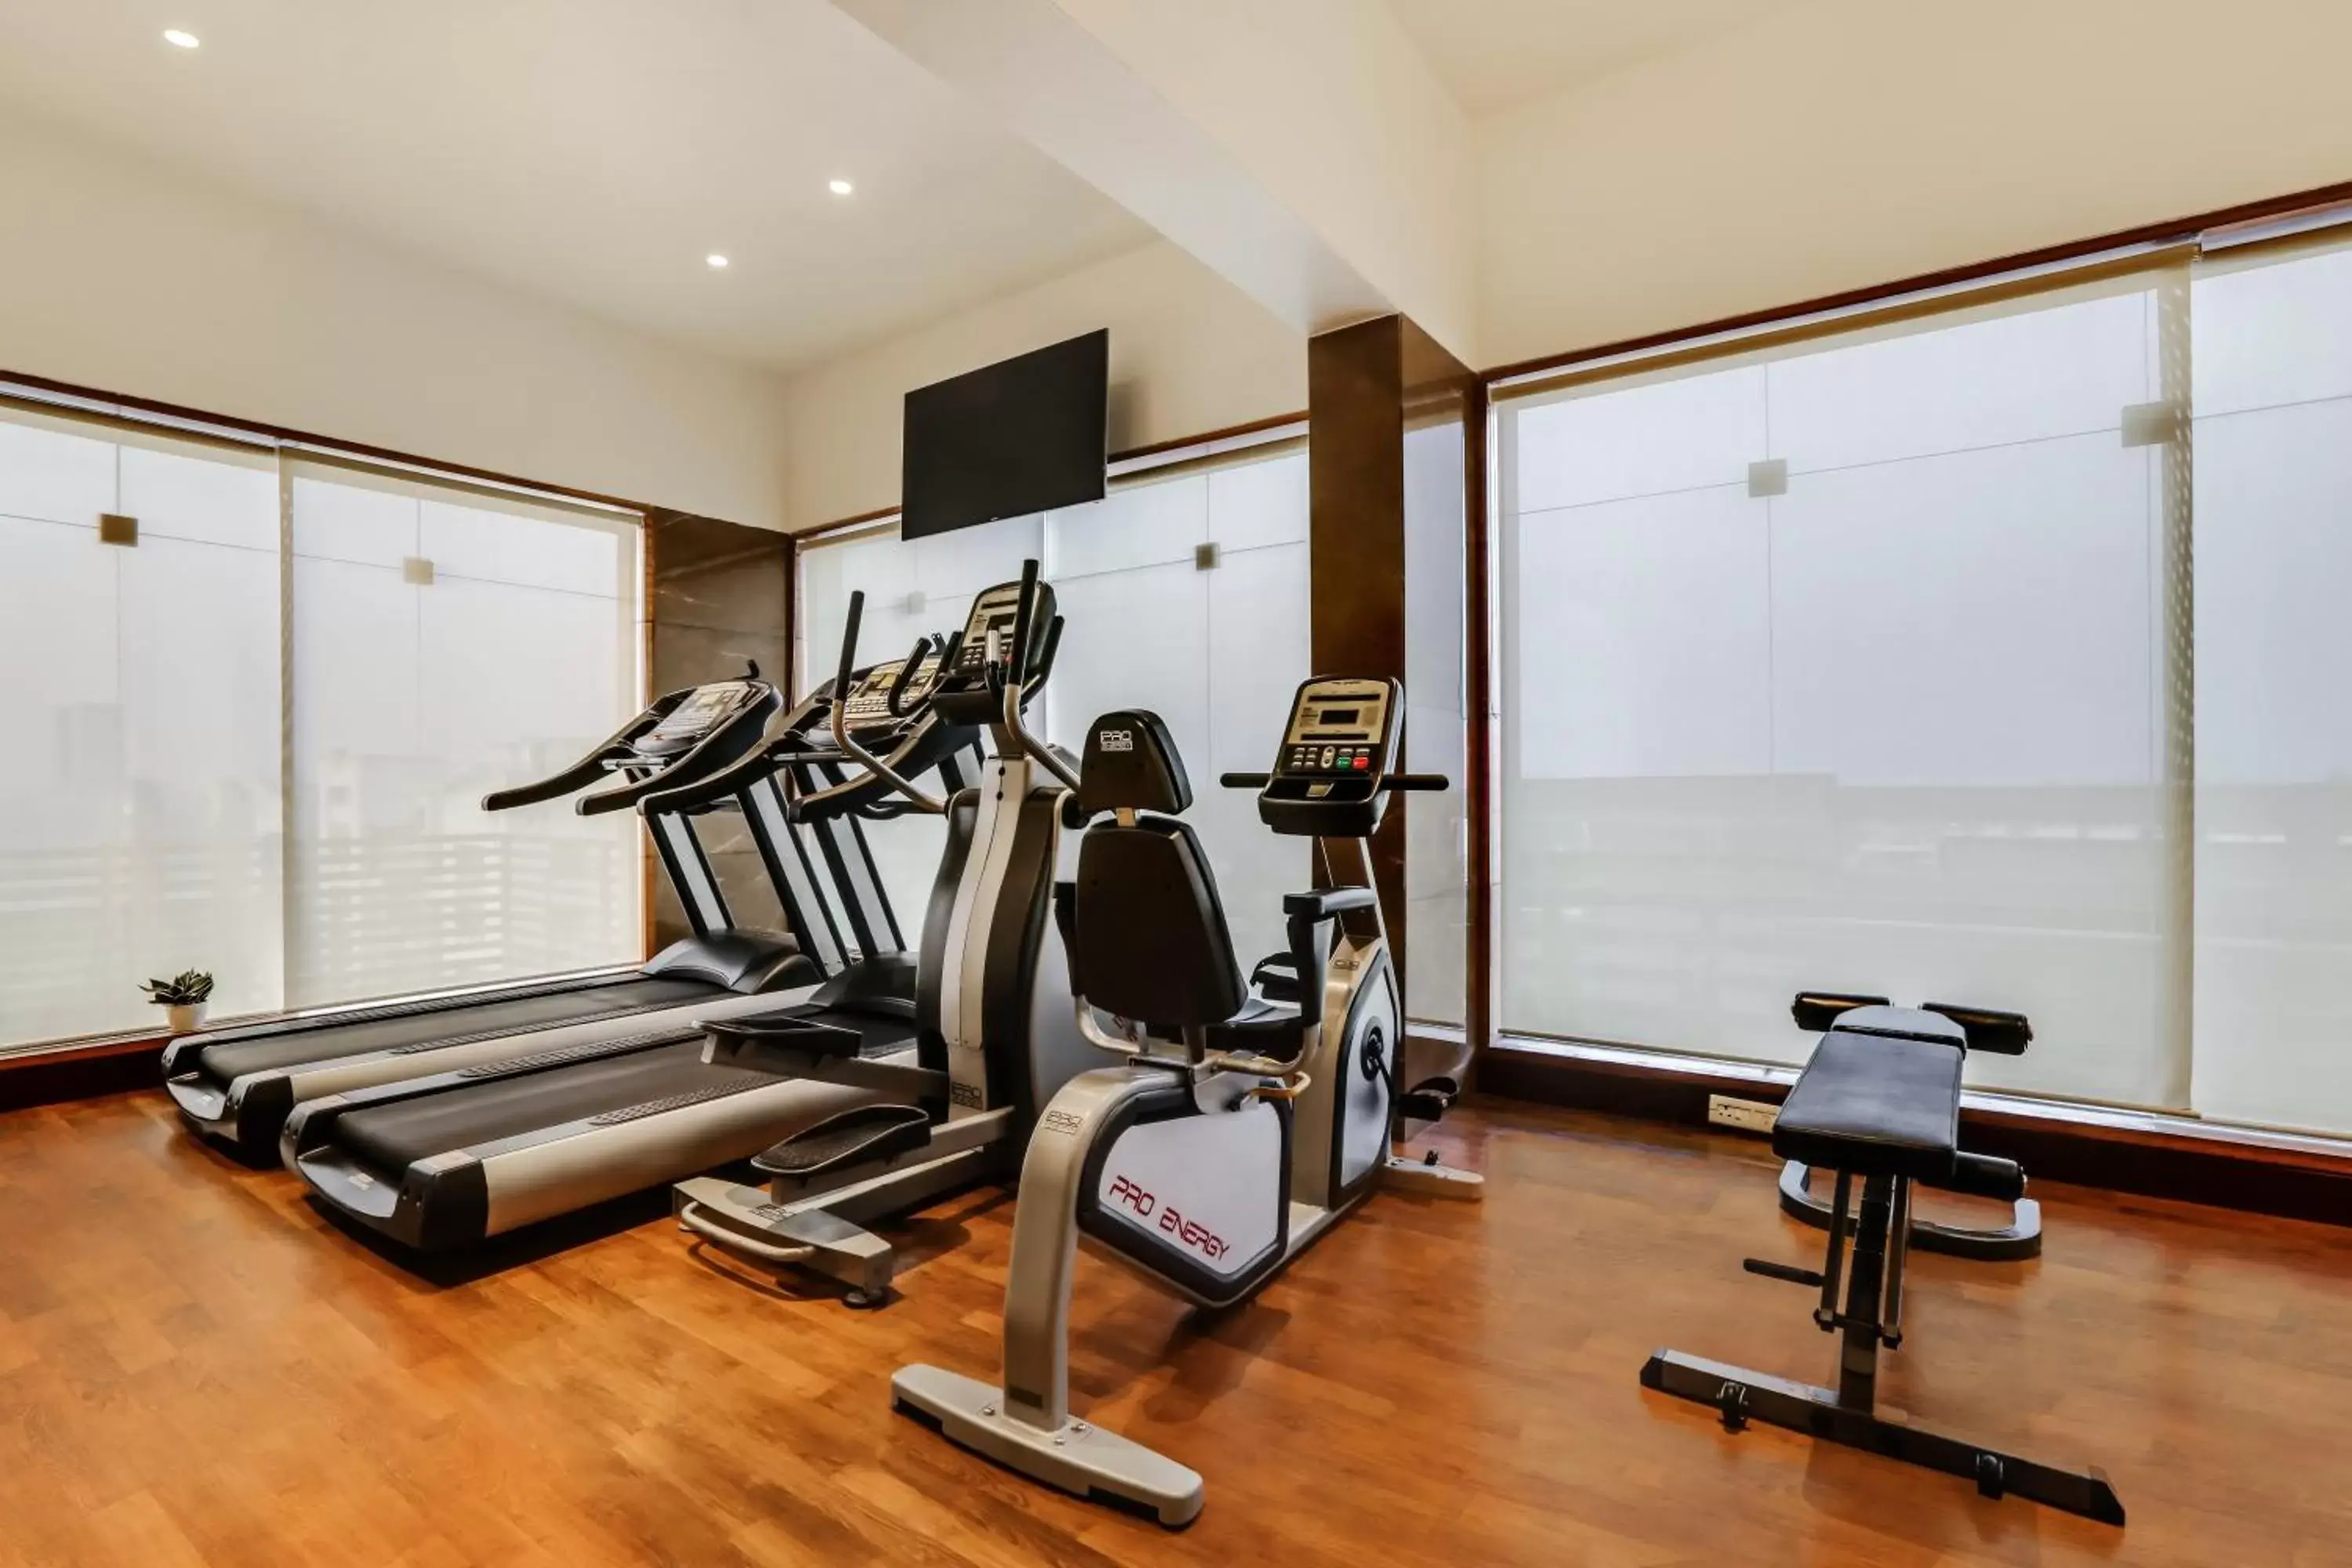 Fitness centre/facilities, Fitness Center/Facilities in Lemon Tree Hotel Viman Nagar Pune